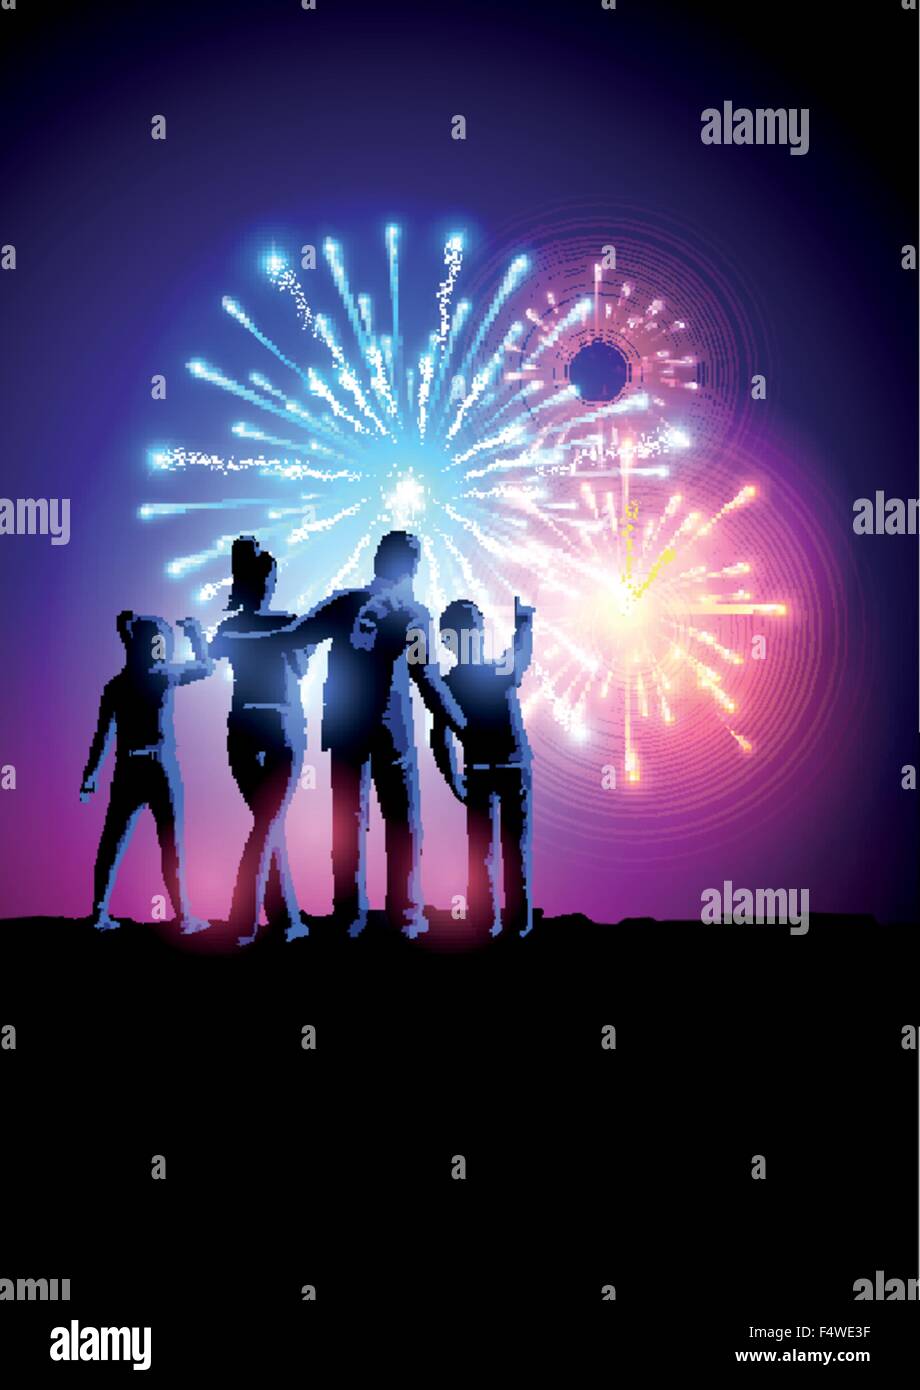 Feuerwerk-Party. Eine glückliche Familie, die gerade ein Feuerwerk anzuzeigen. Vektor-Illustration. Stock Vektor